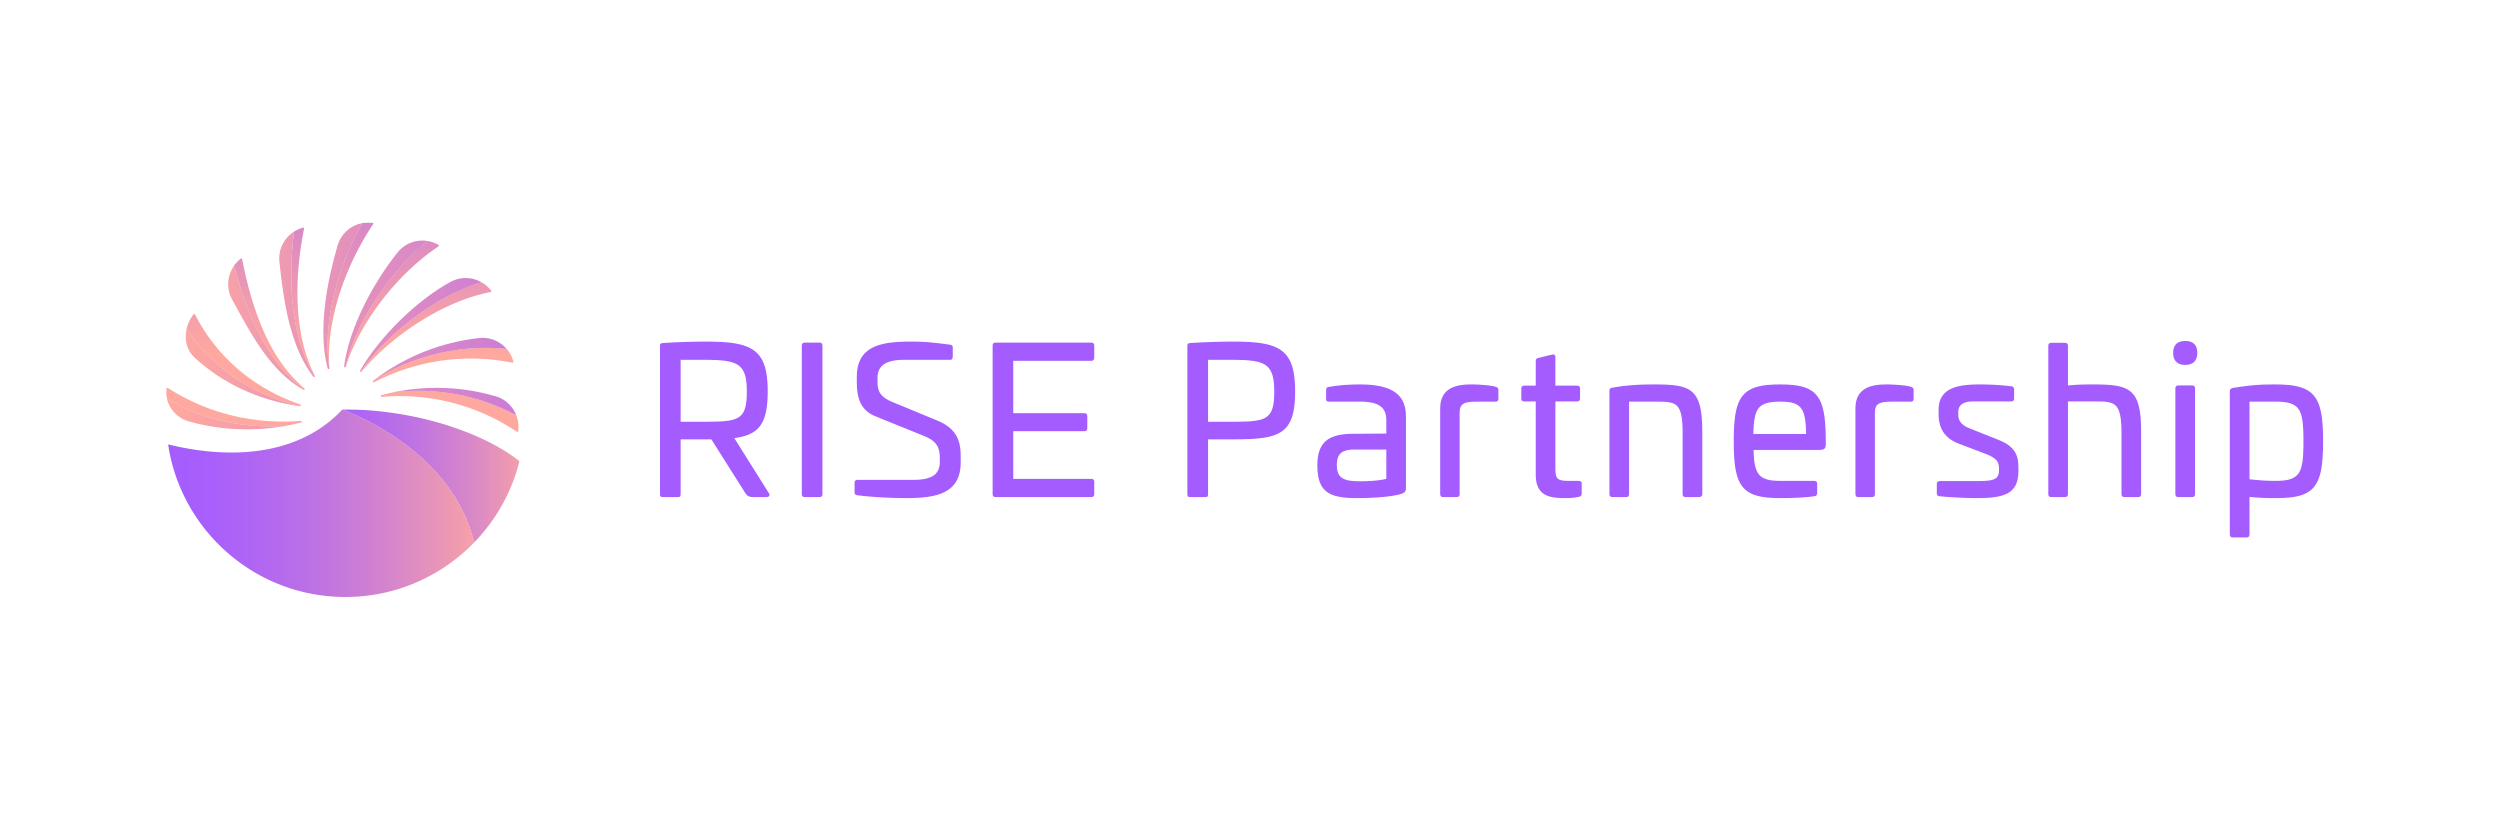 RISE Partnership Company Logo